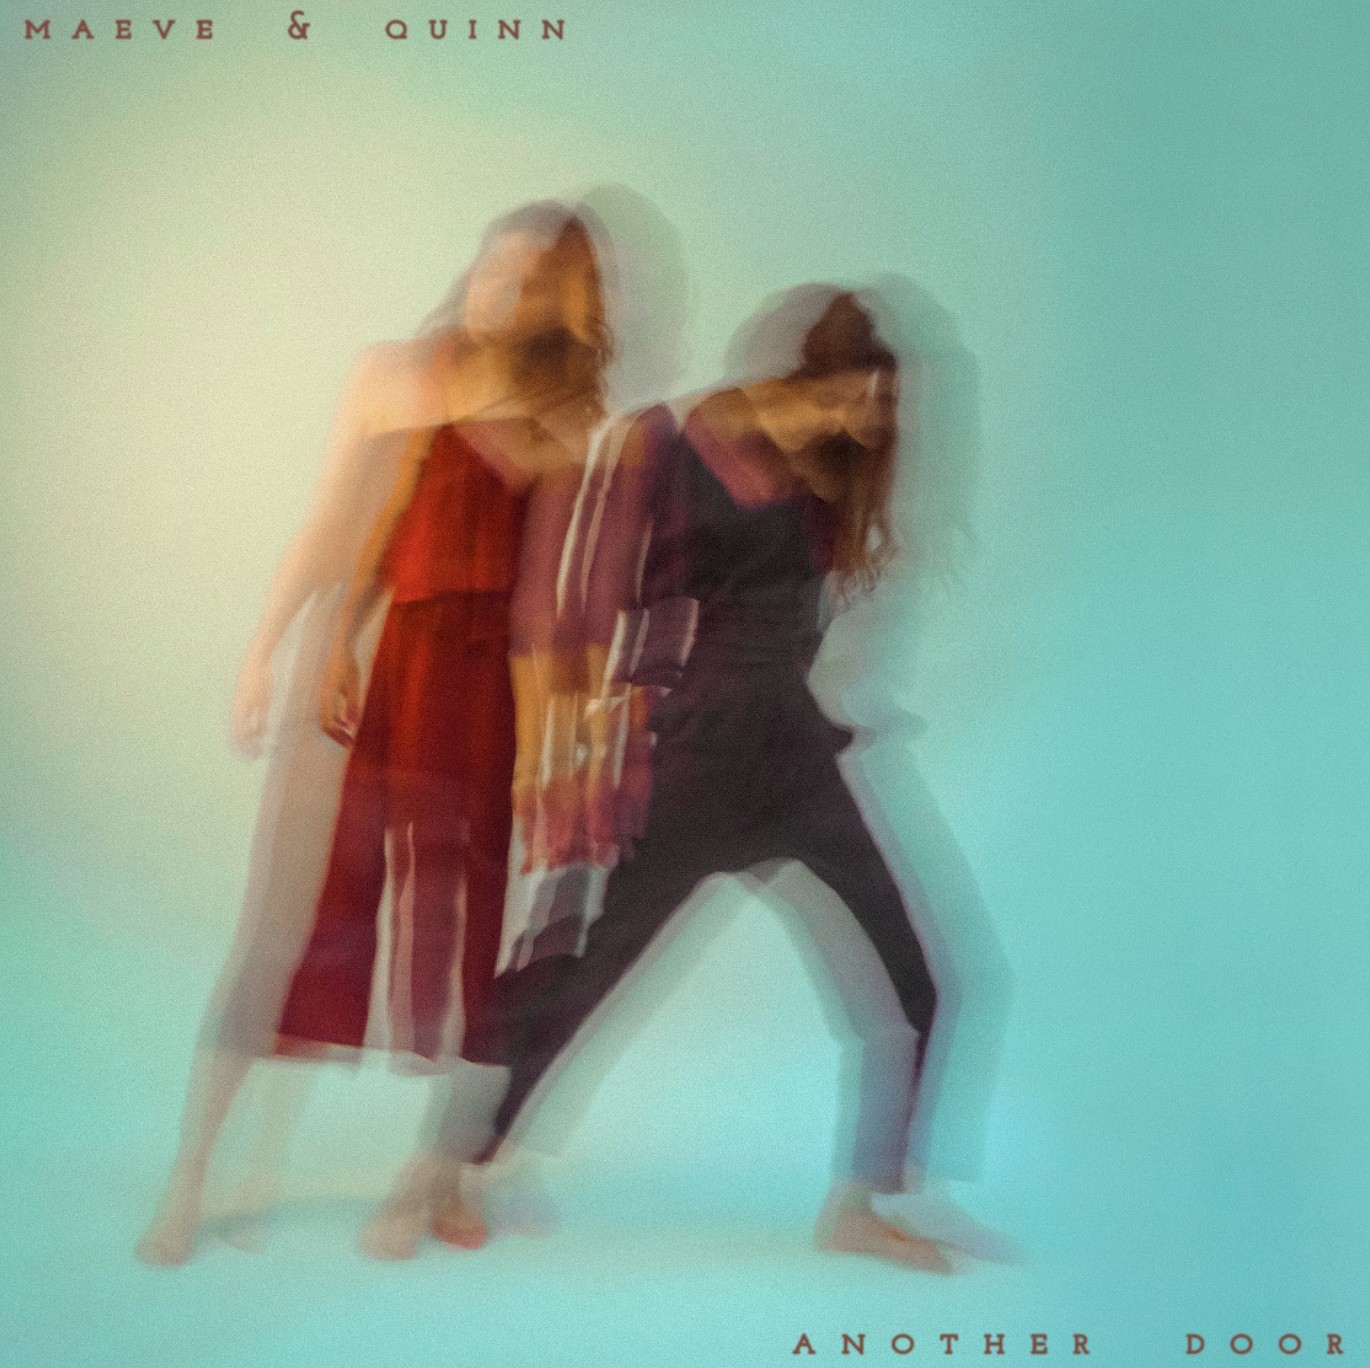 maeve & quinn ‘Another Door’ album artwork